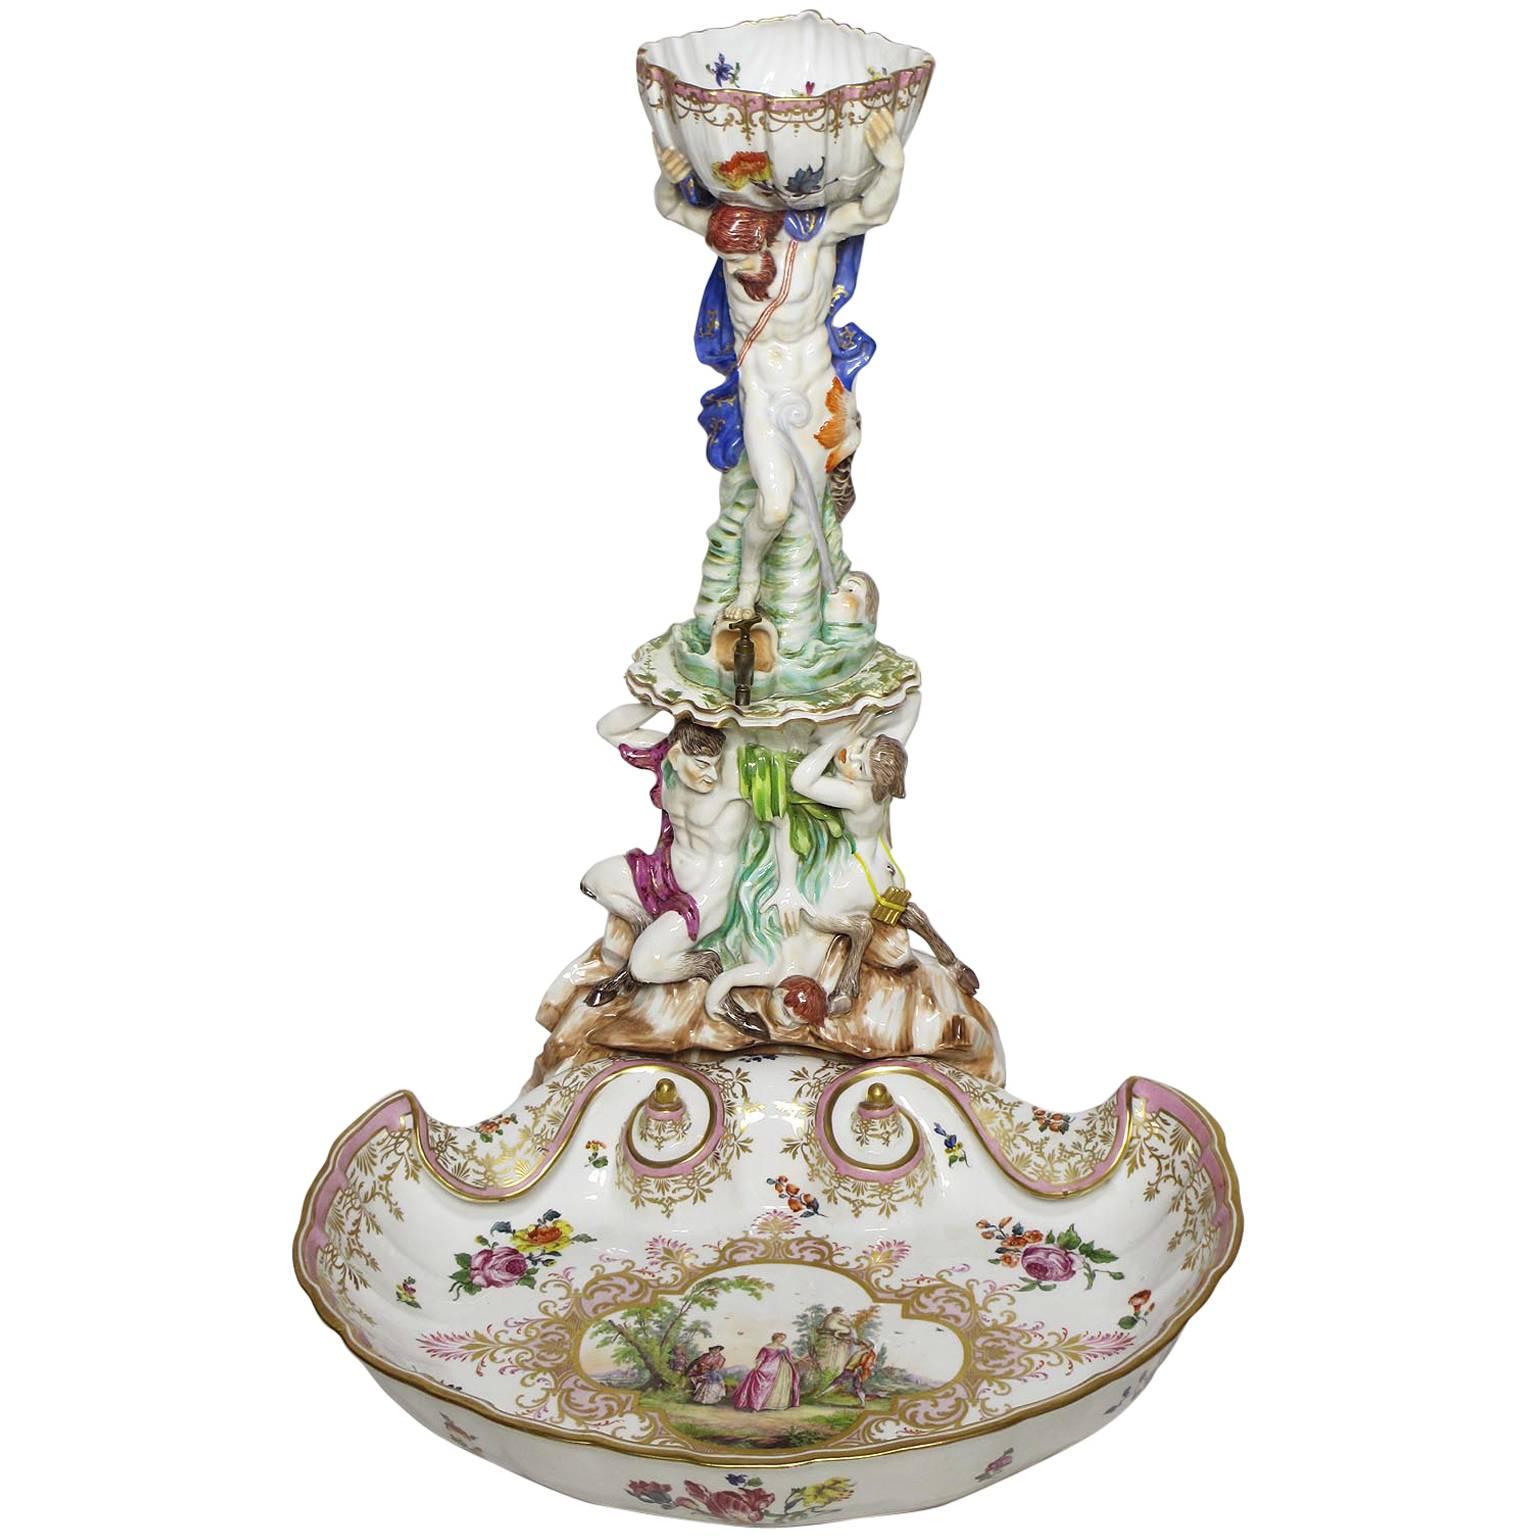 Fontaine à distributeur à liqueur en porcelaine figurative allemande du 19ème siècle, fine et rare